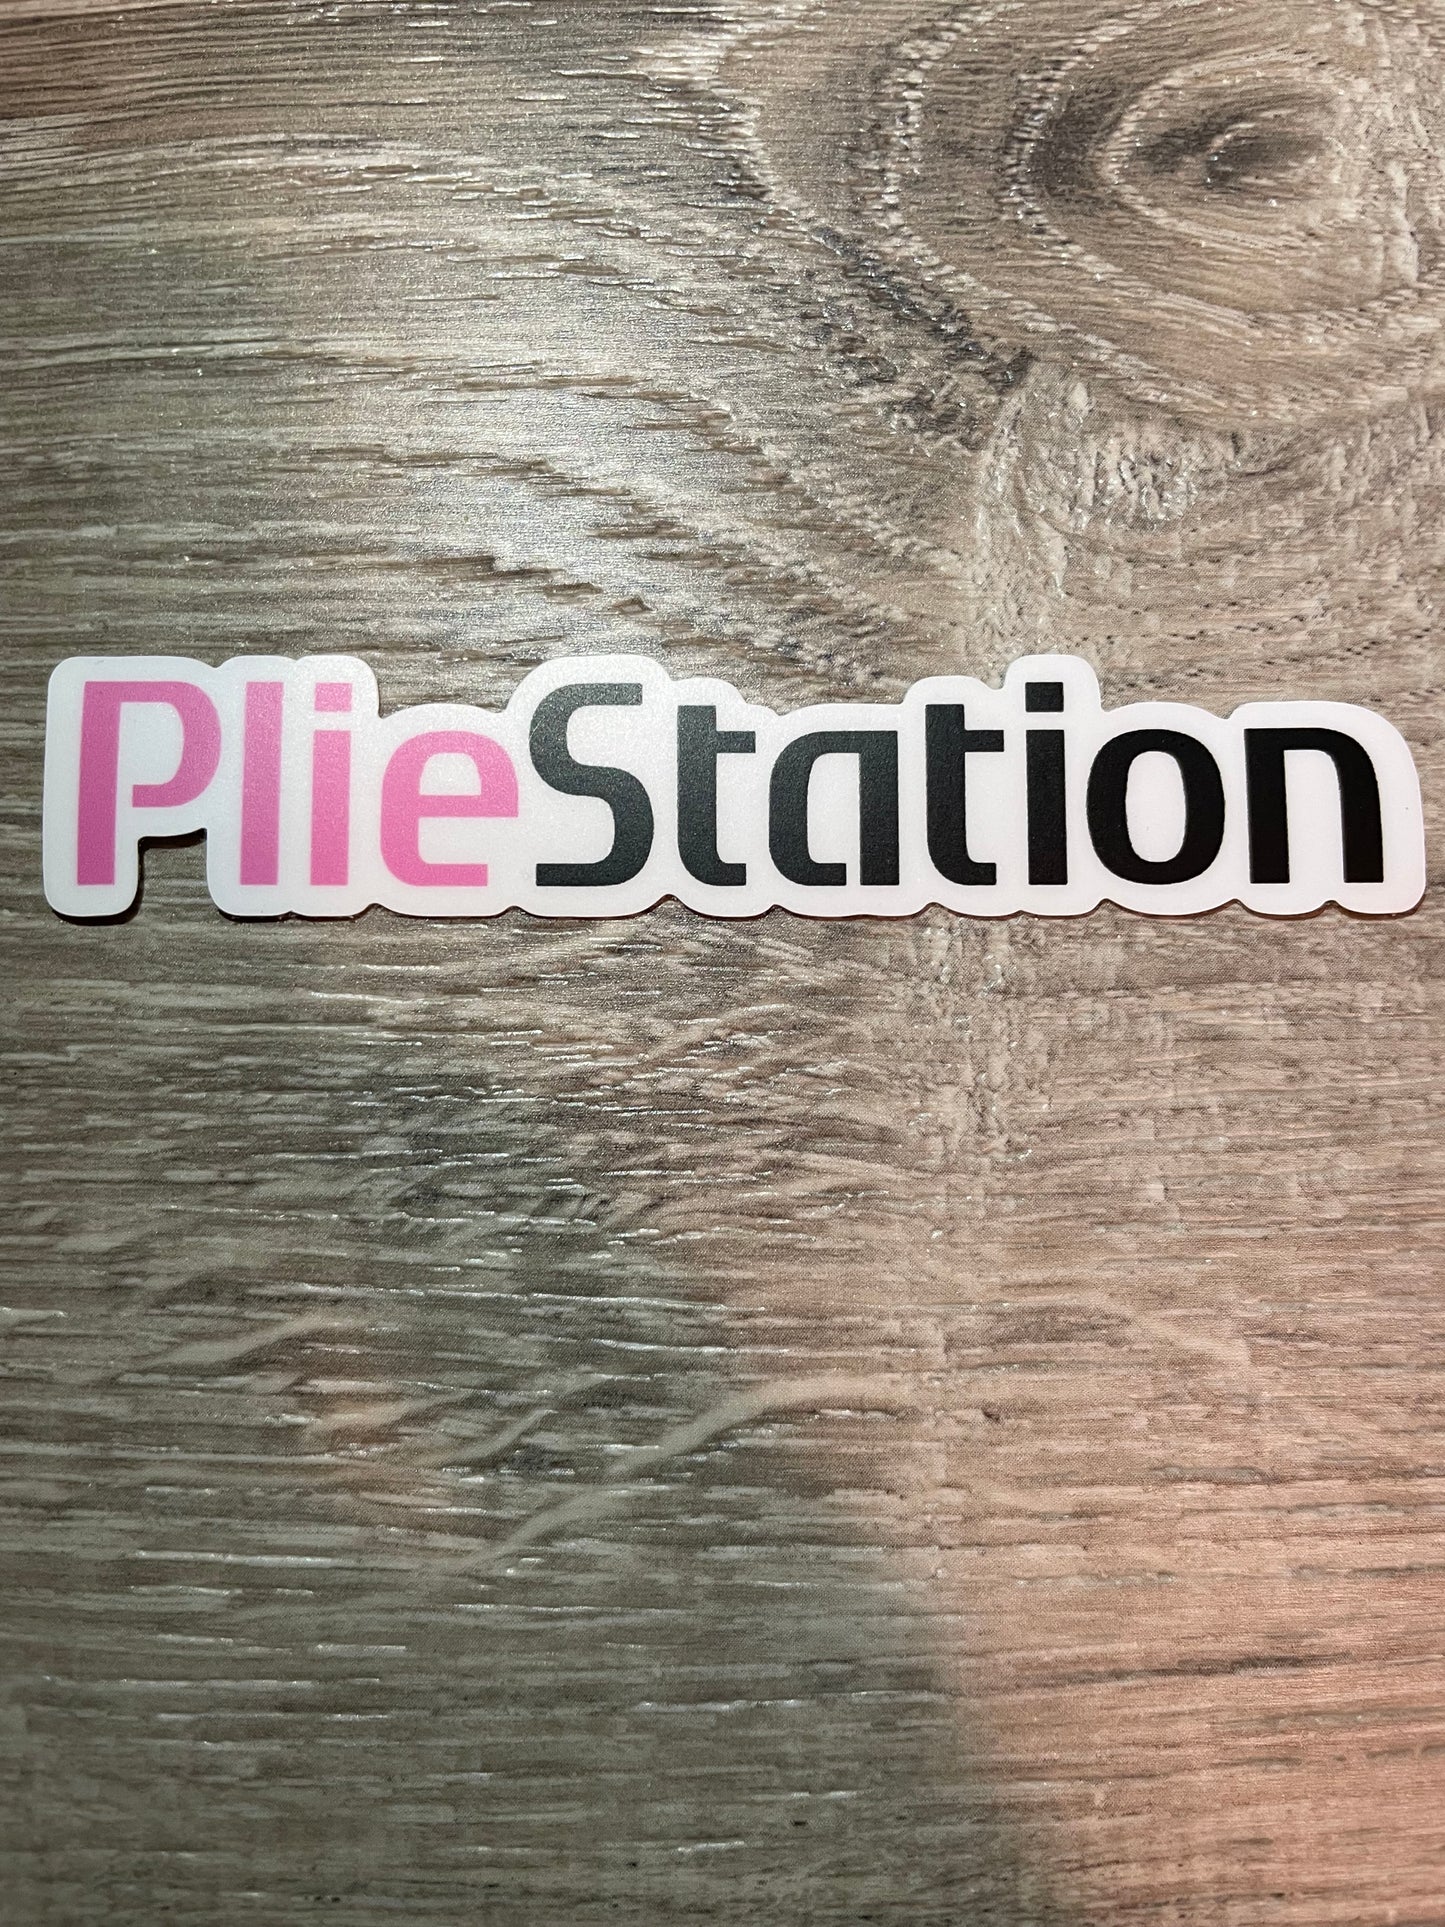 PLIEstation Parody Dance Sticker, 4" x 0.8"